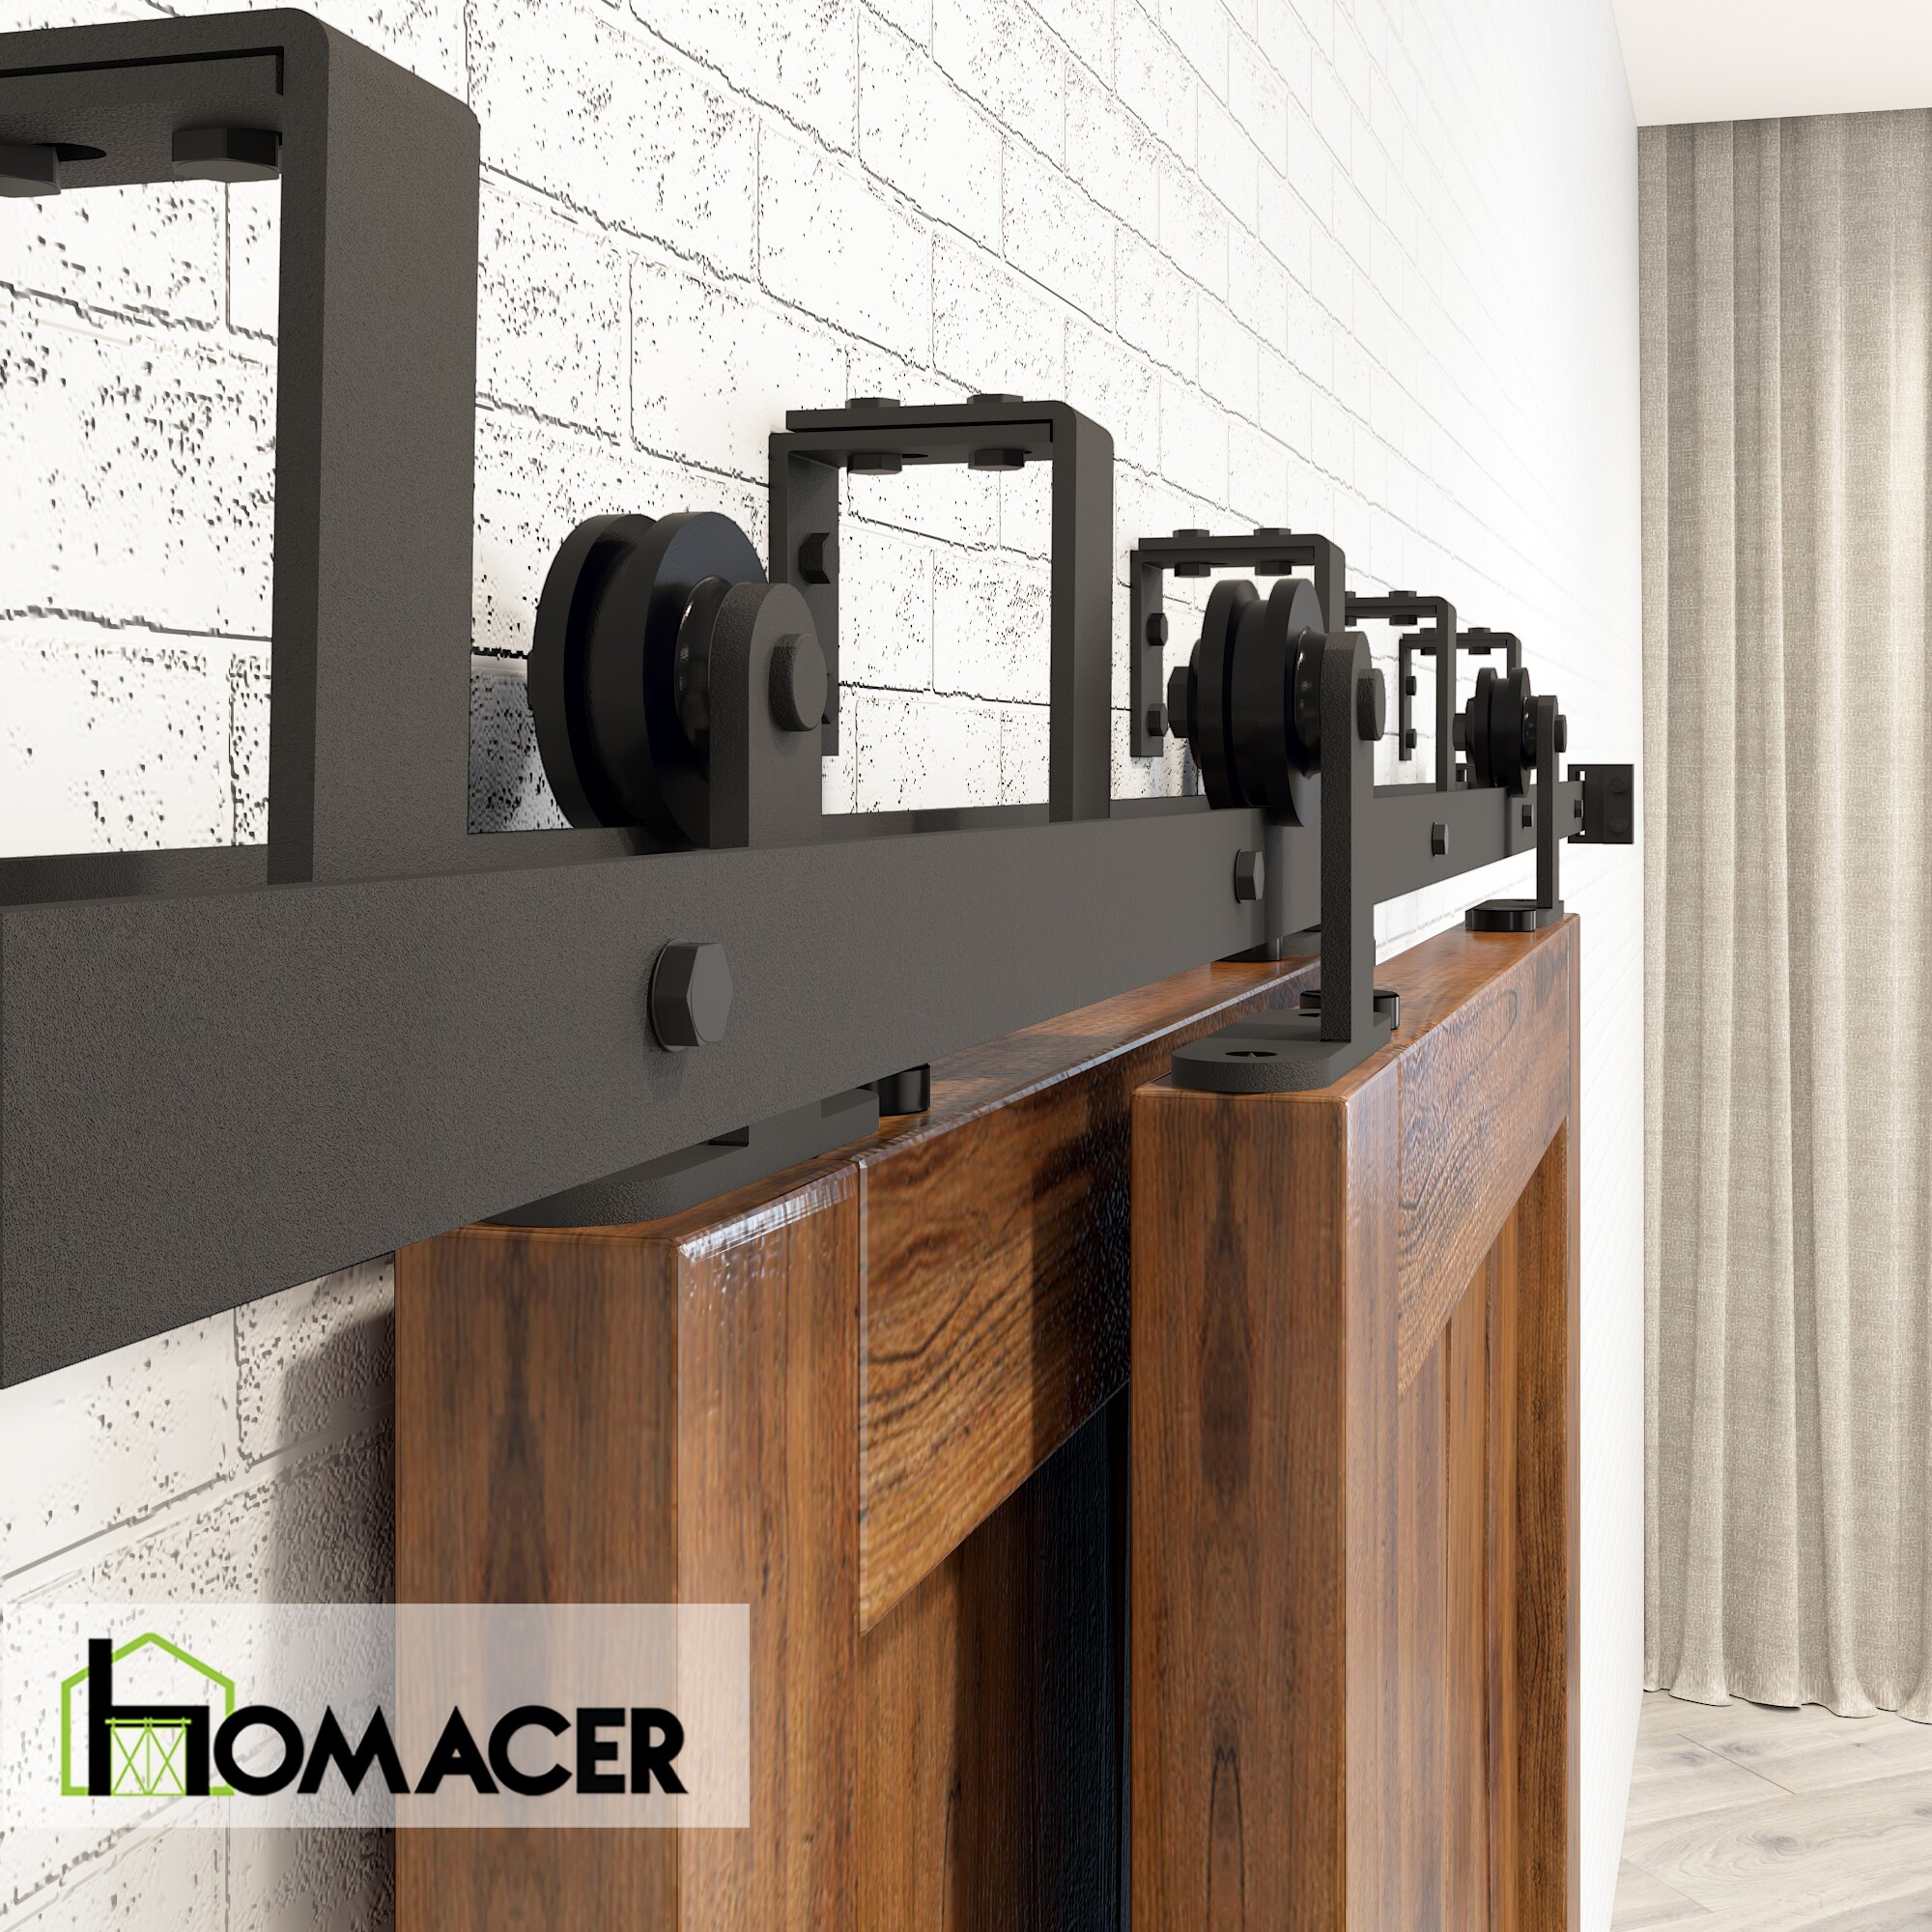 HOMACER 54-in Black Rustic Double Track Bypass U-Shape Sliding Barn Door Hardware Kit - T-Shape Design Roller